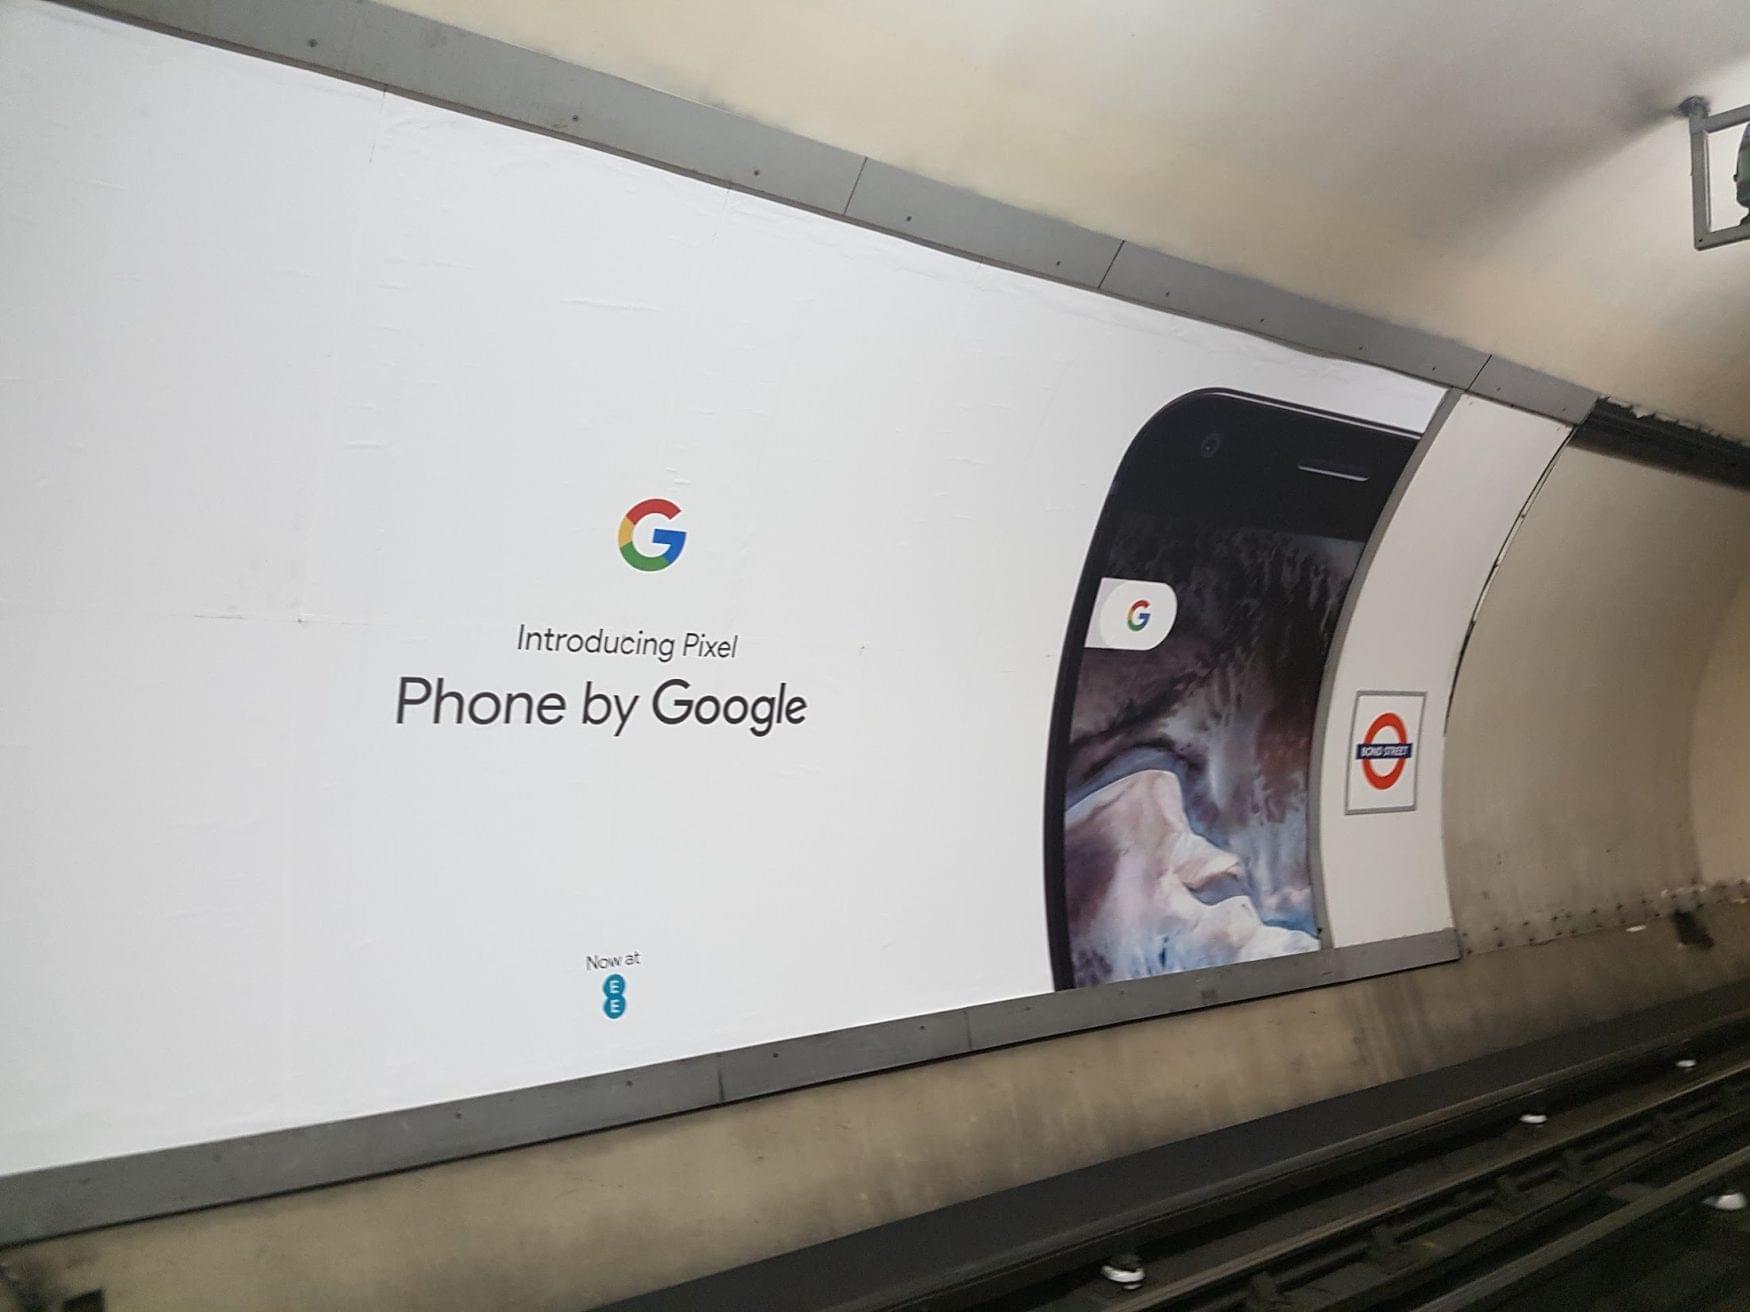 chiến dịch video marketing thành công của Google Pixel đáng được nghiên cứu thảo luận